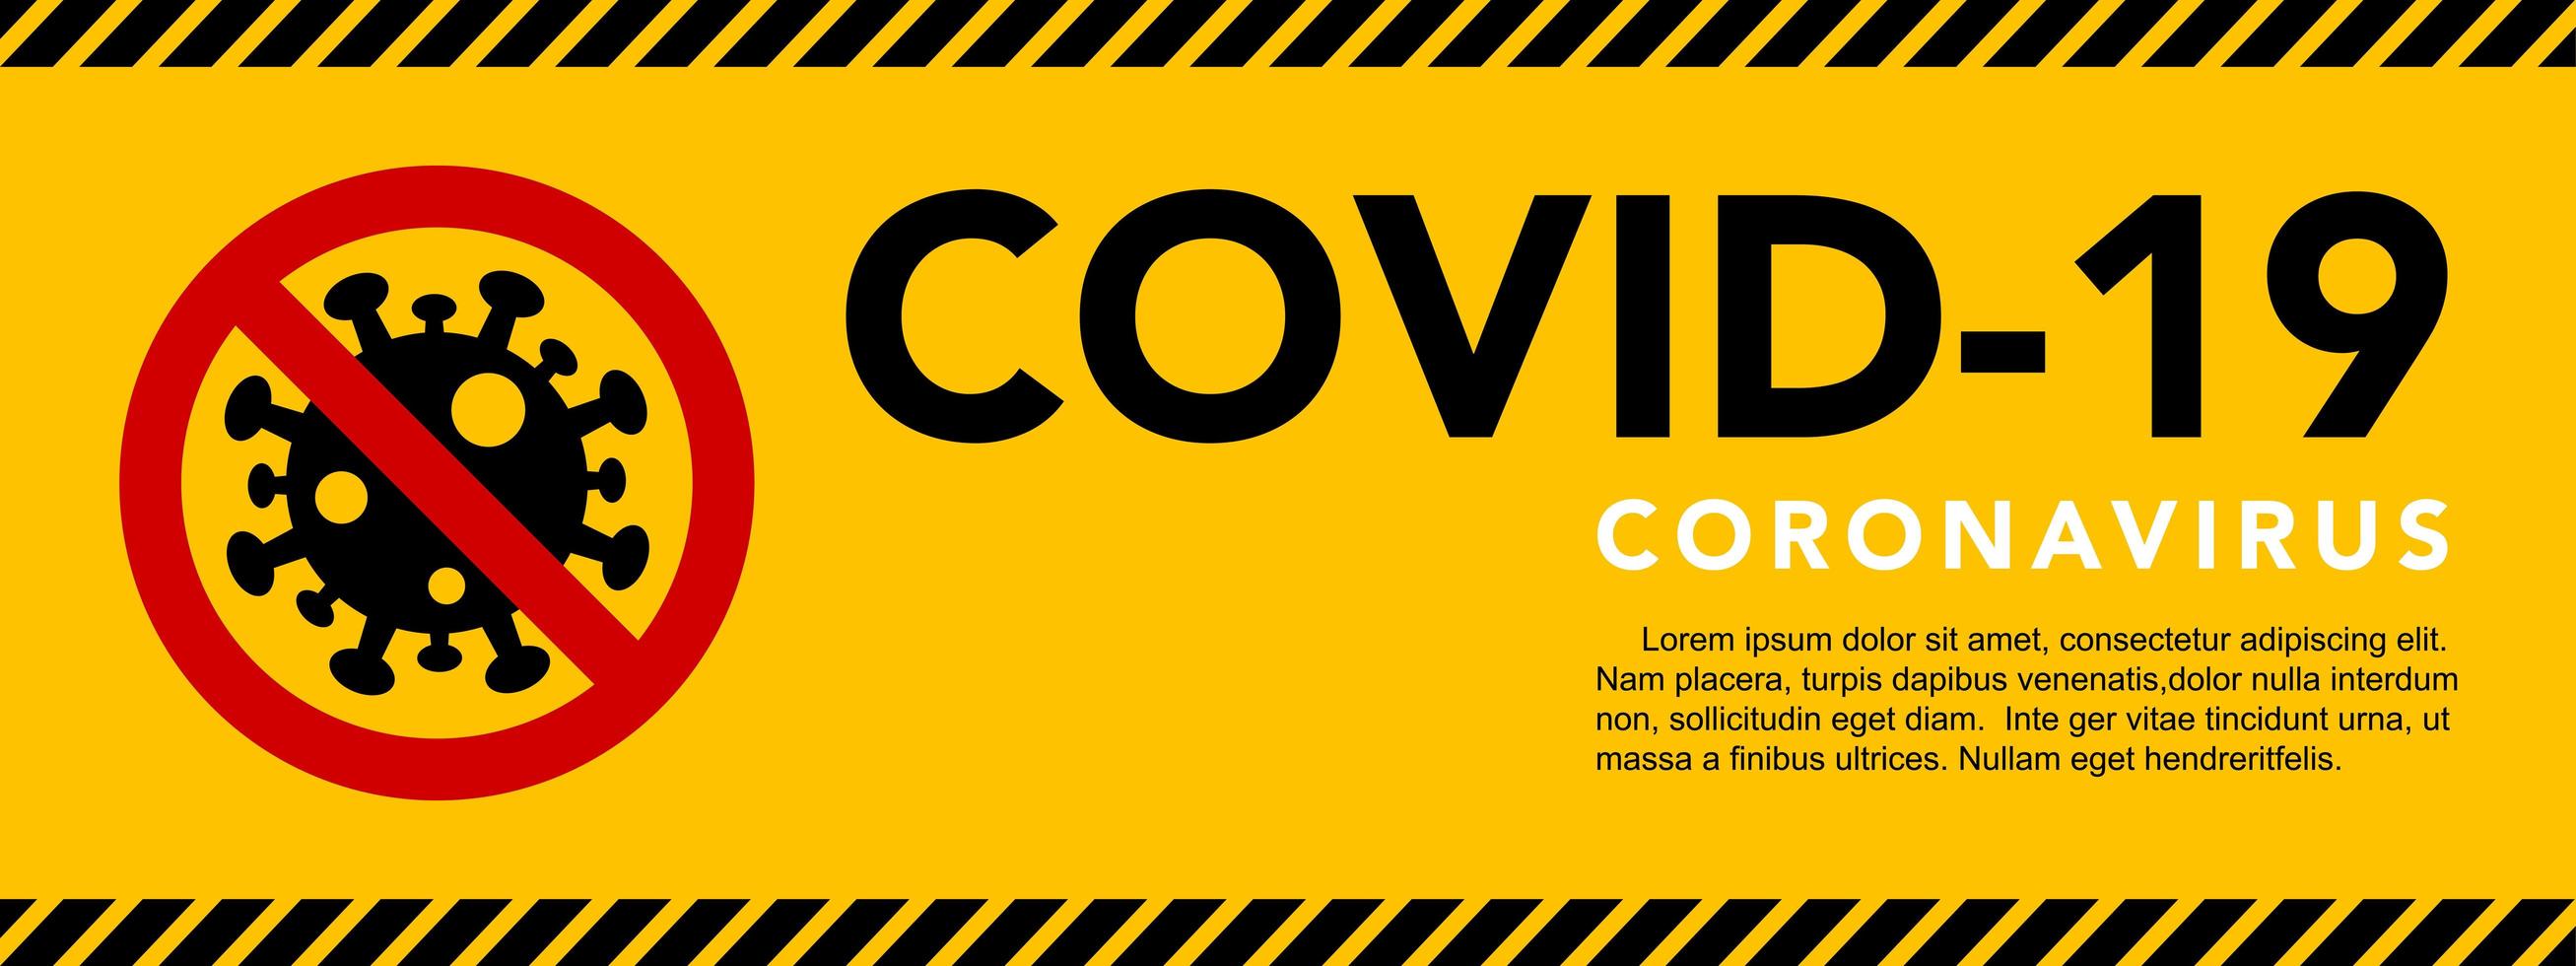 Coronavirus caution tape style banner vector